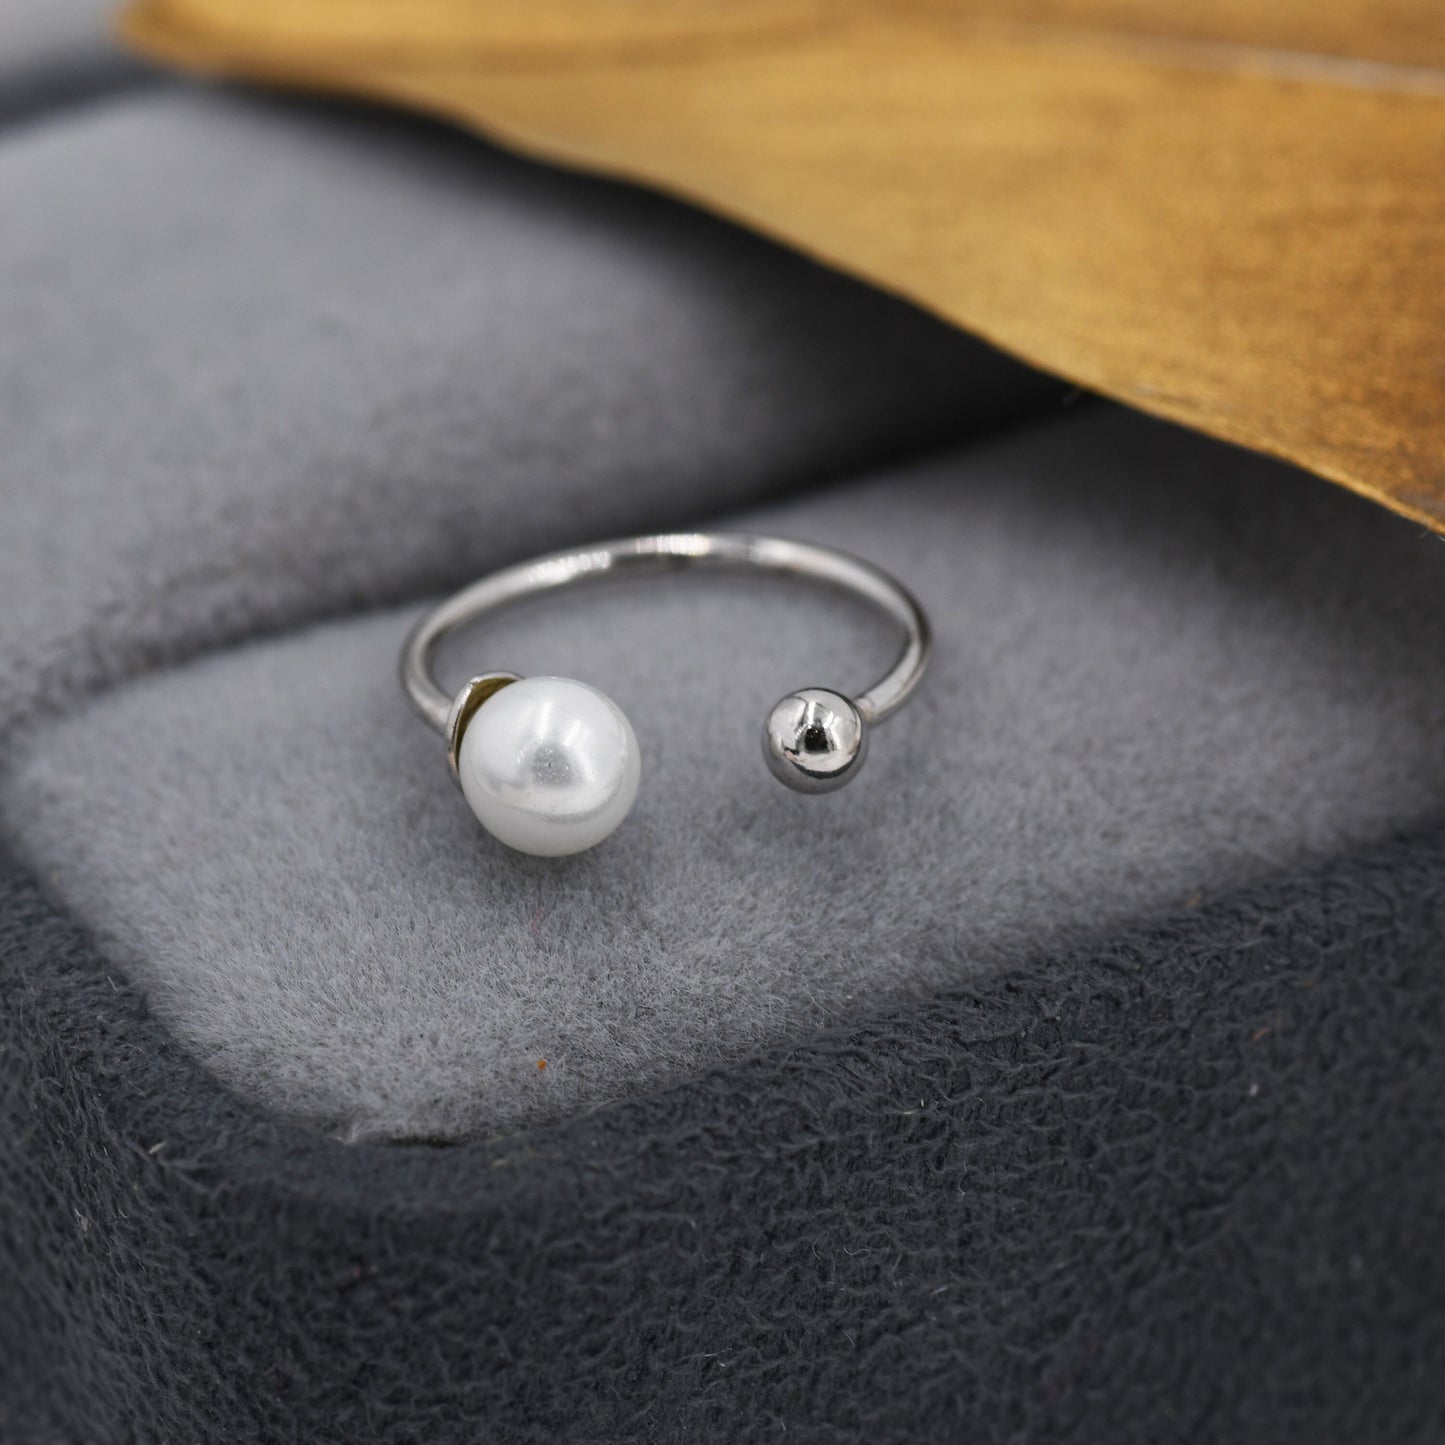 Pearl Ear Cuff in Sterling Silver, Asymmetric Pearl and Ball Cuff Earrings, Piercing Free Earrings